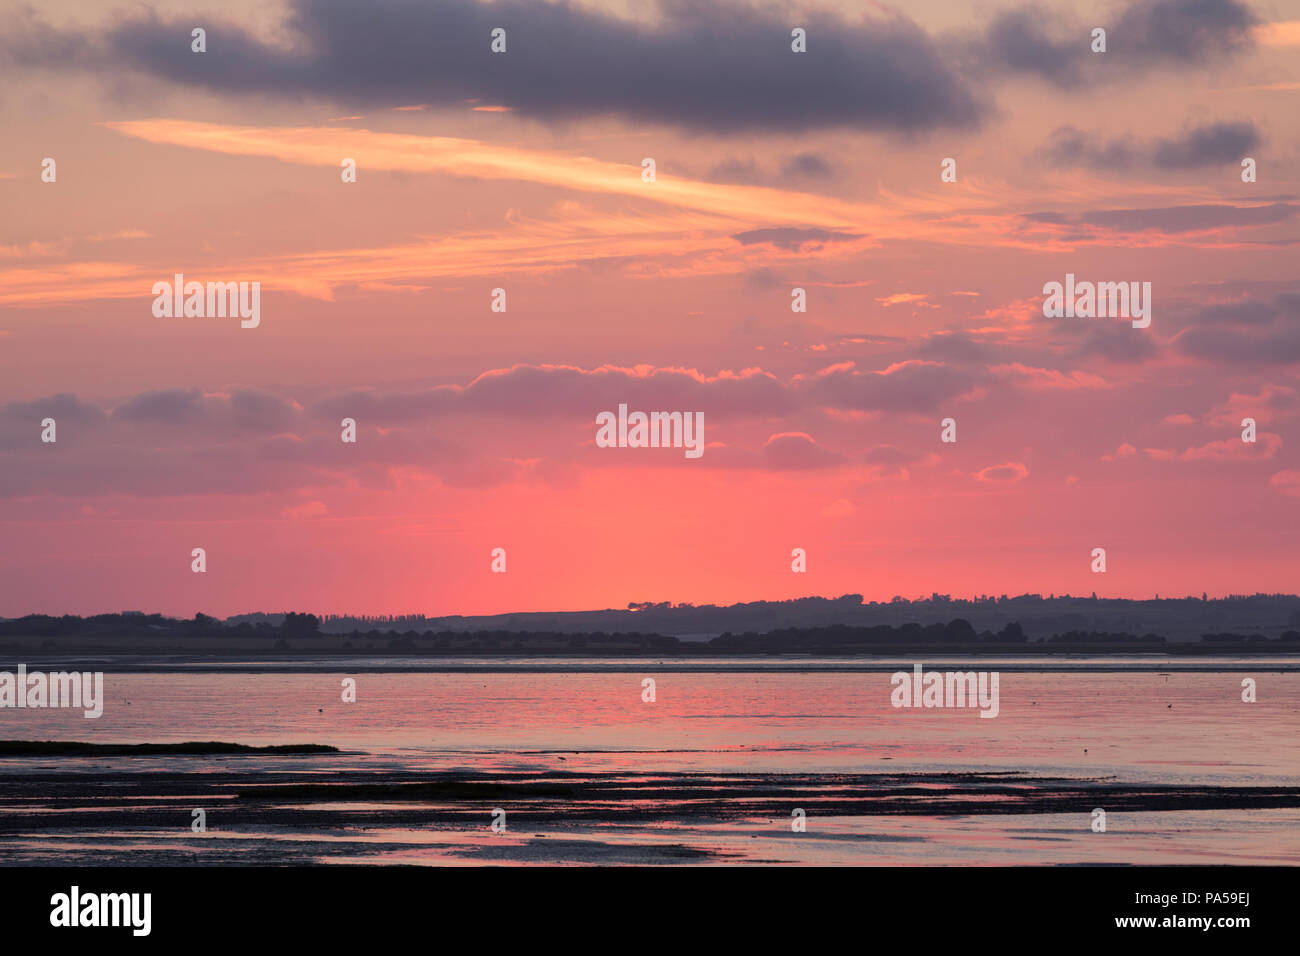 Soleil rose pris de Seasalter, Whitstable, Kent, UK à l'estuaire de l'autre côté de la rigole de l'égard de l'île de Sheppey. Banque D'Images